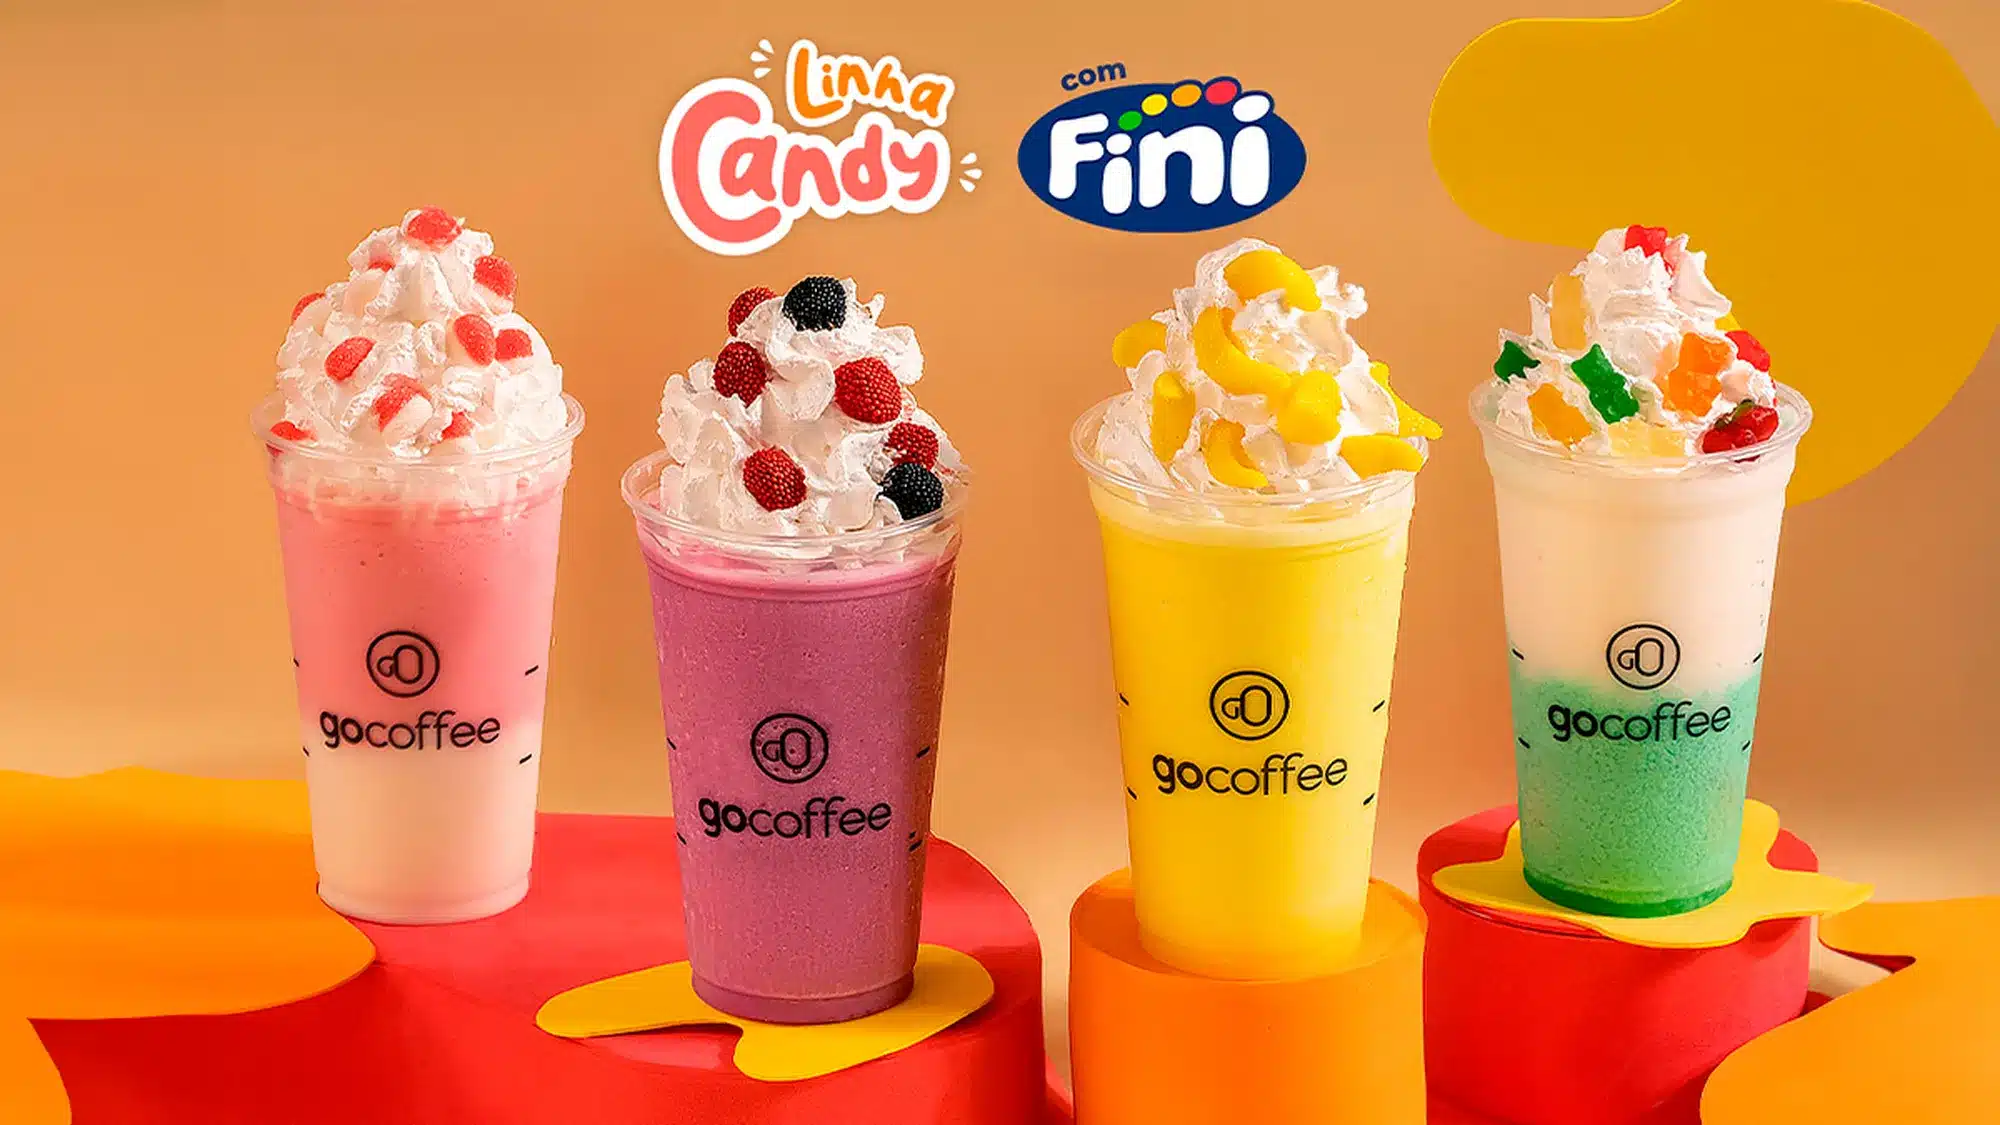 Go Coffee anuncia novos sabores para a linha ‘Candy com Fini’